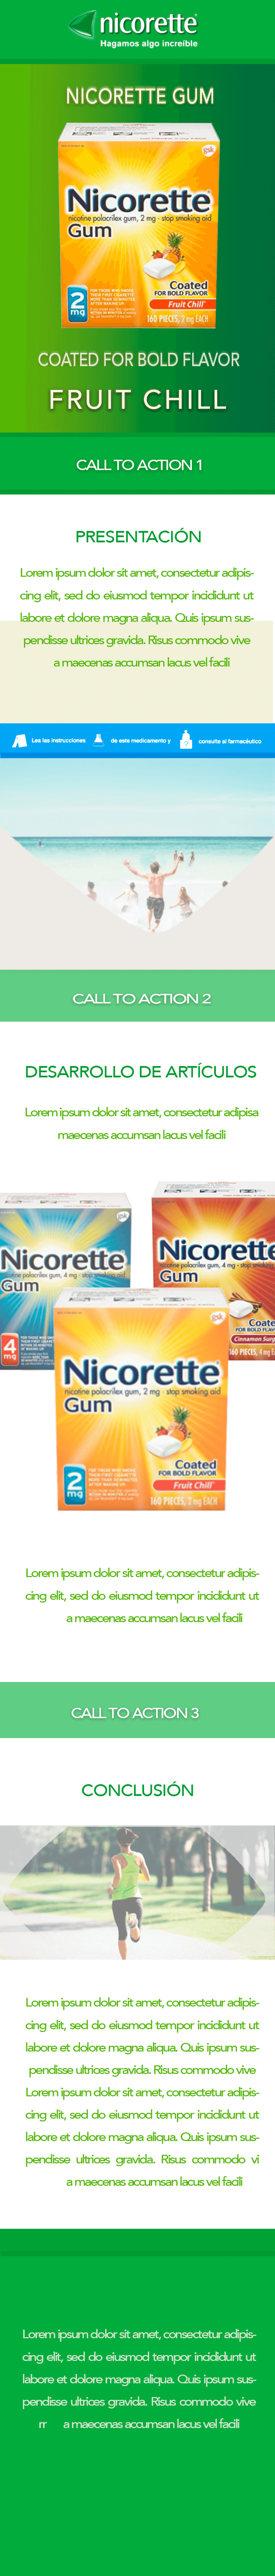 Propuestas Newsletter Nicorette Gum 6